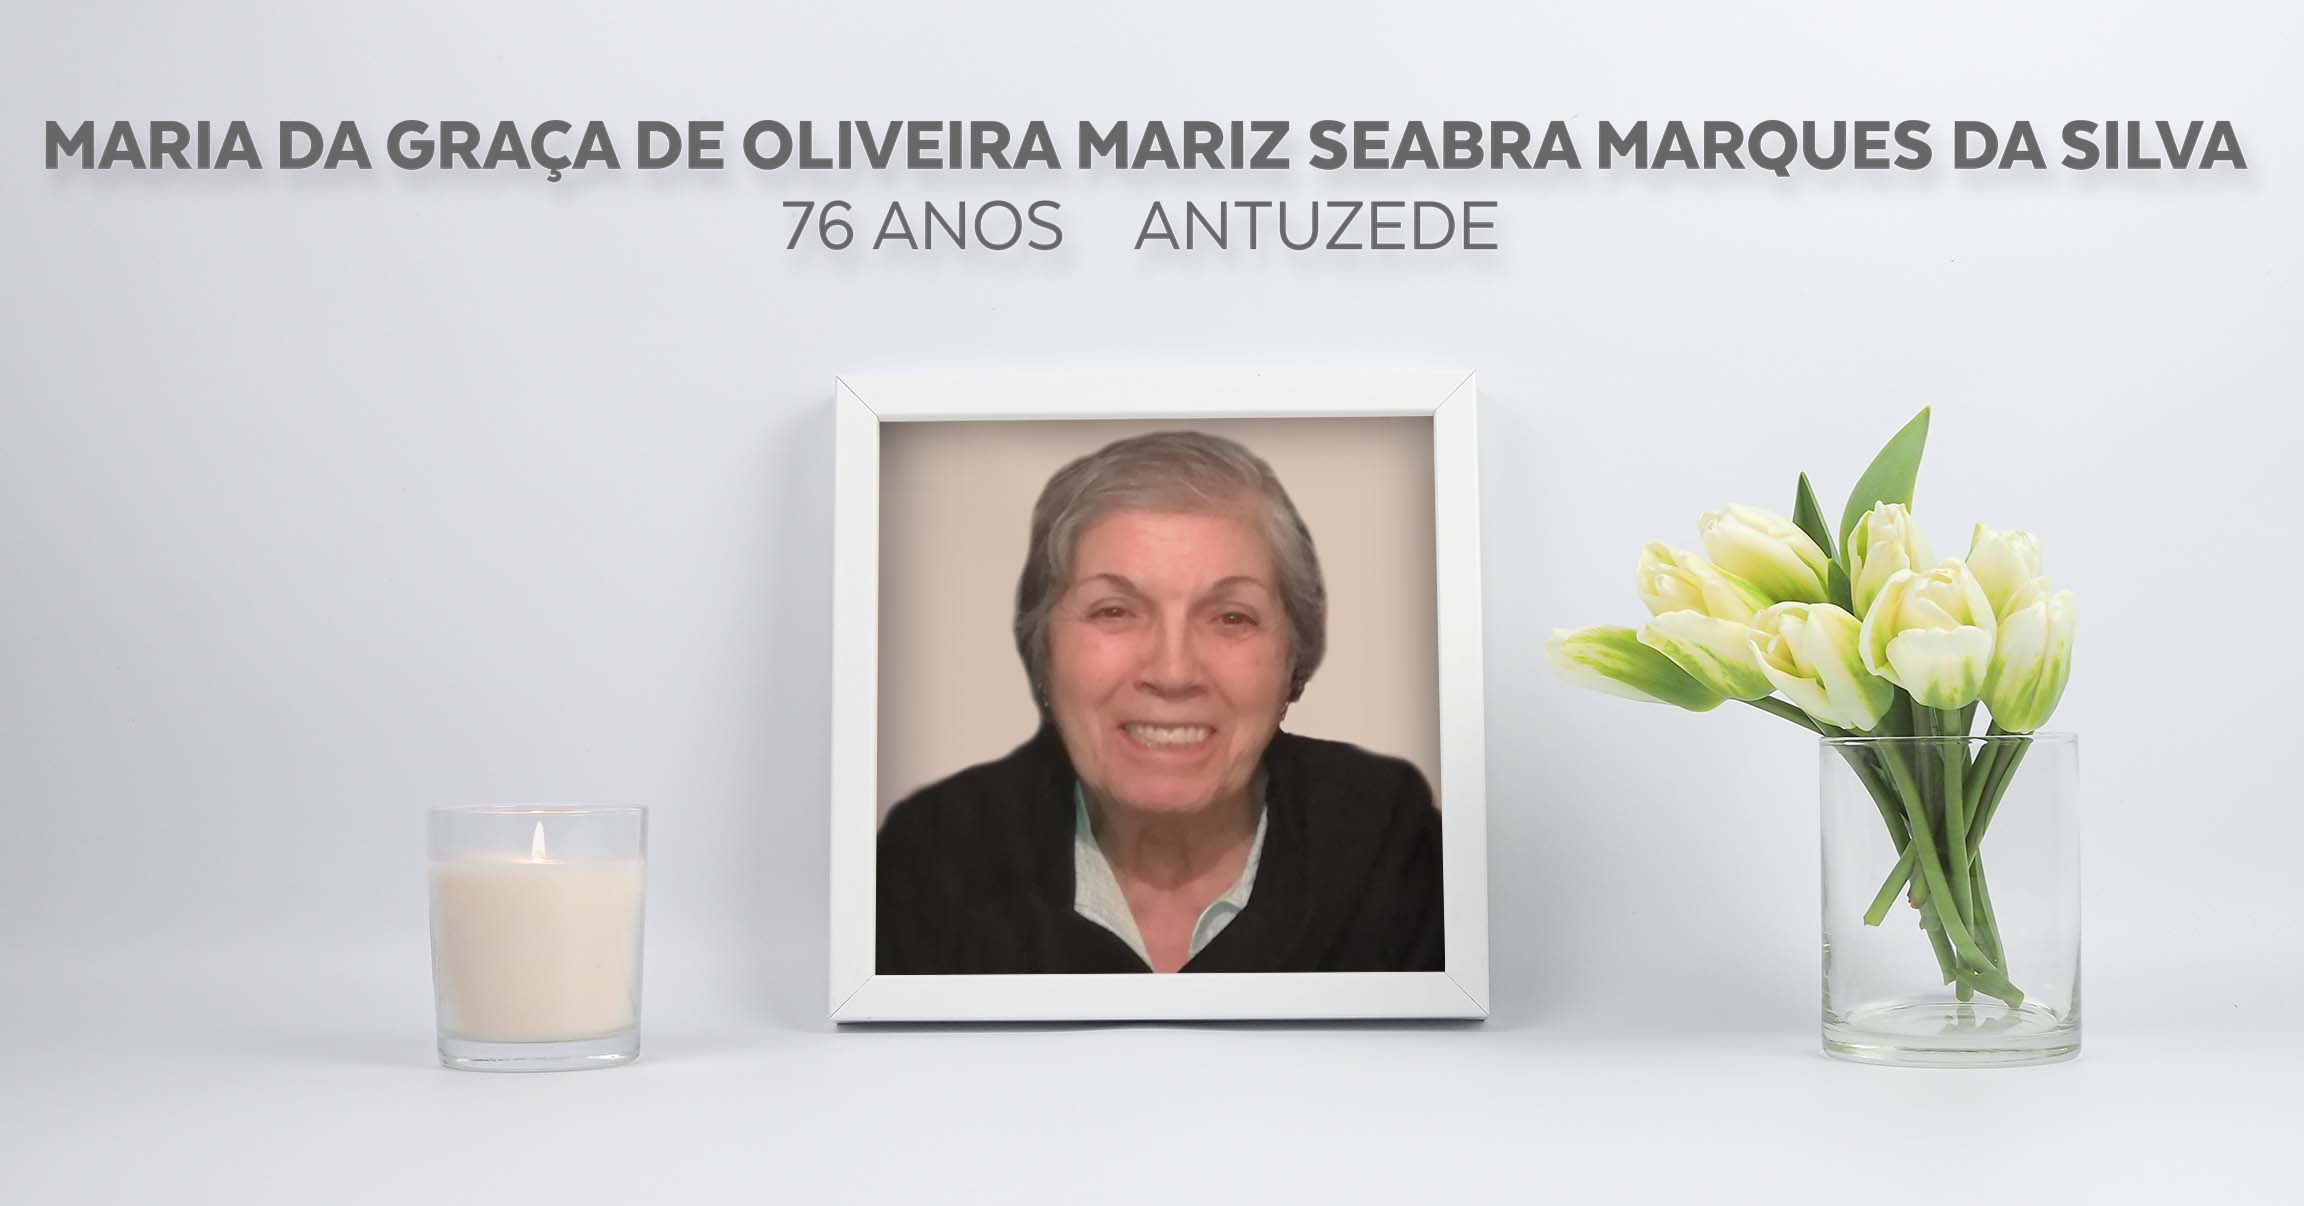 Maria da Graça de Oliveira Mariz Seabra Marques da Silva